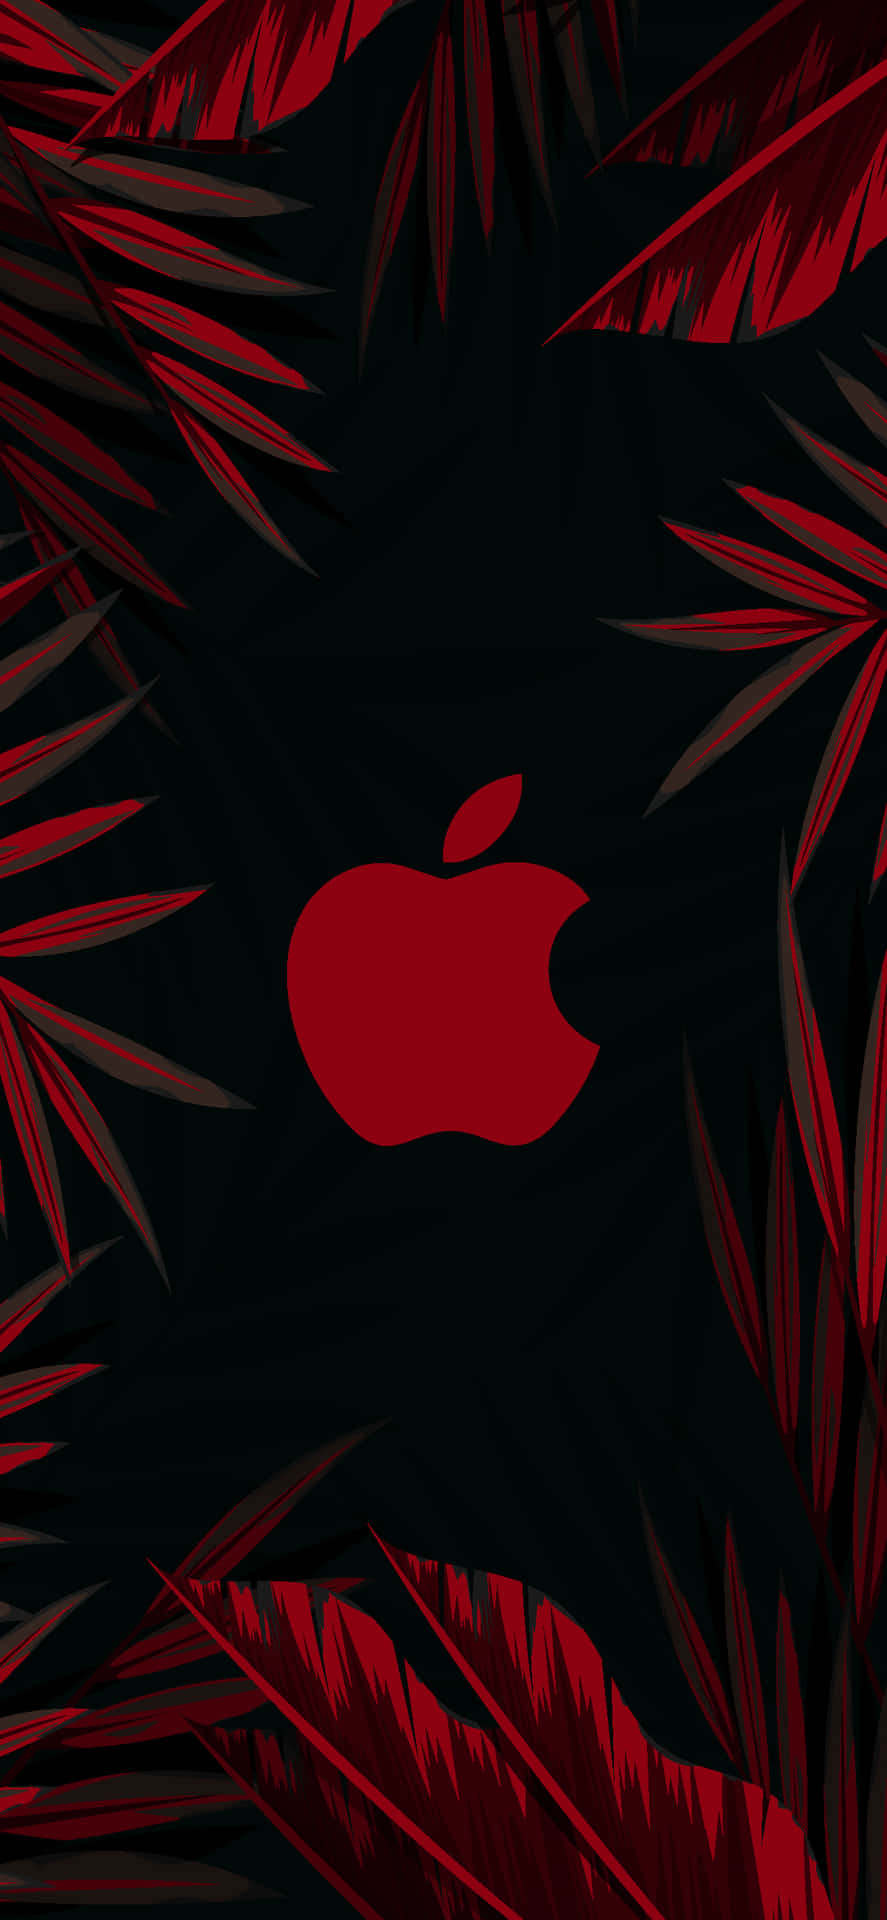 Röttlogotyp Med Löv Fantastisk Apple Hd Iphone. Wallpaper